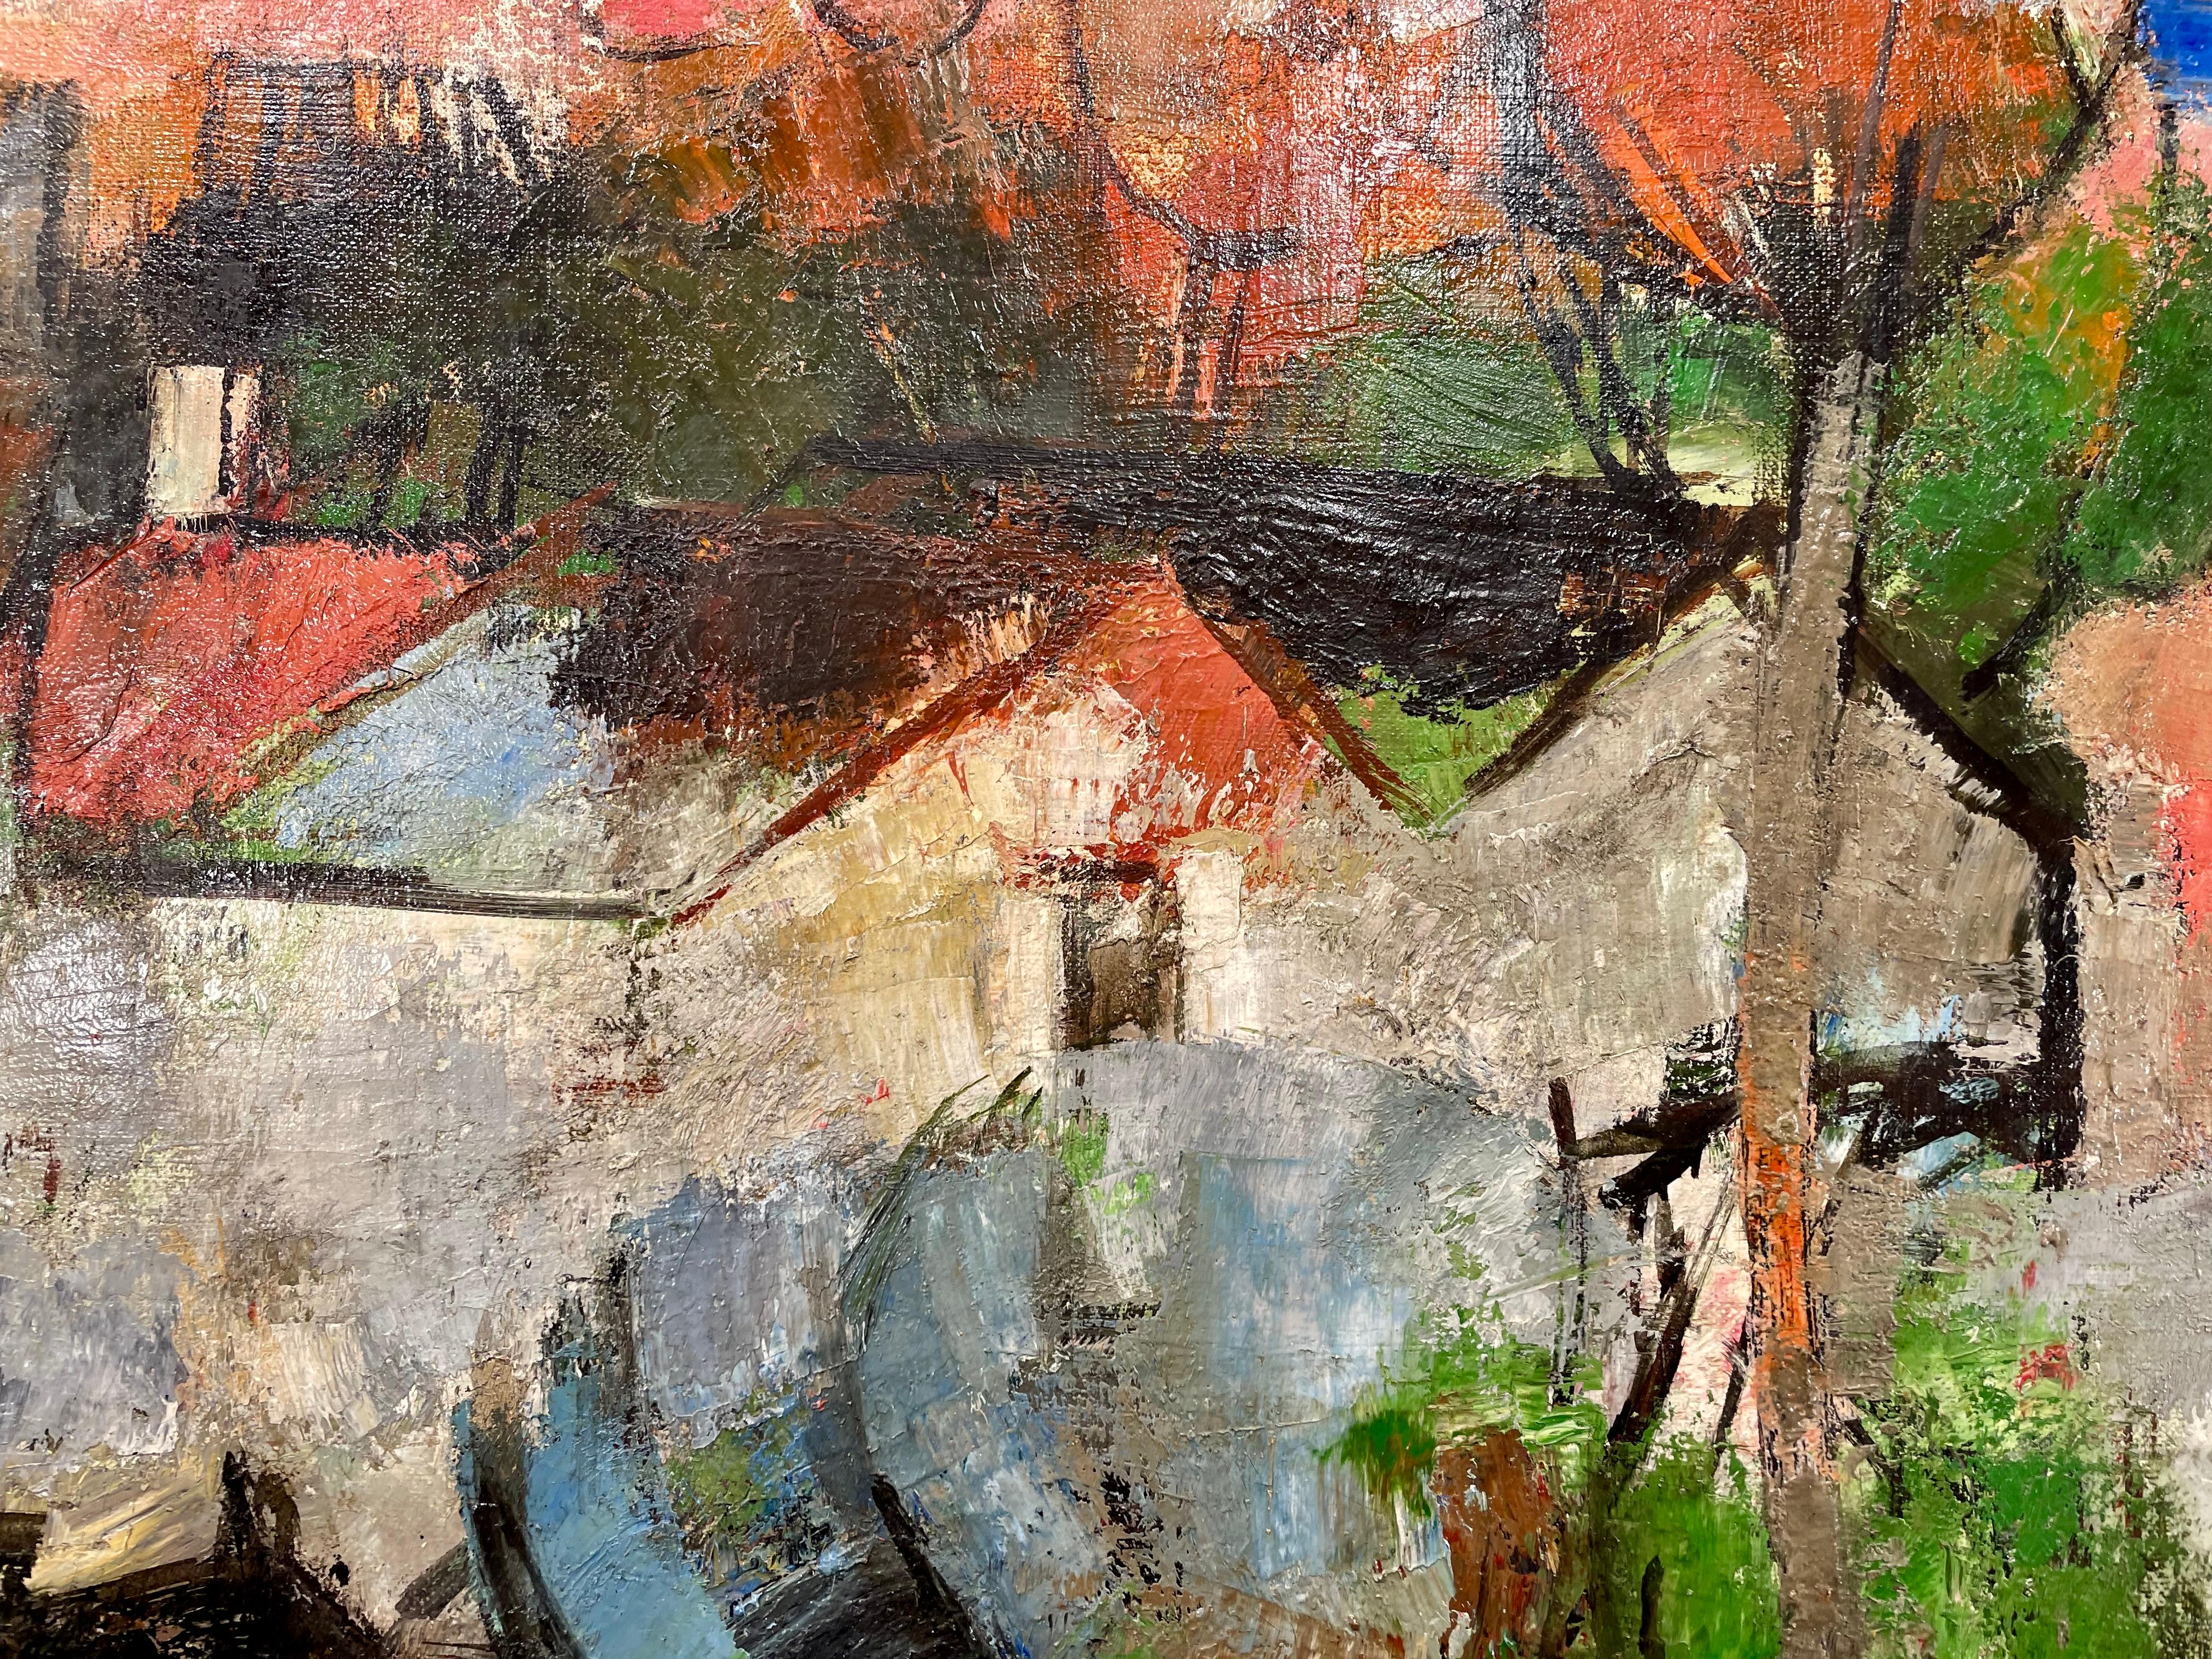 Maison au bord d'un lac - Impressionnisme abstrait Painting par Paul Guiramand